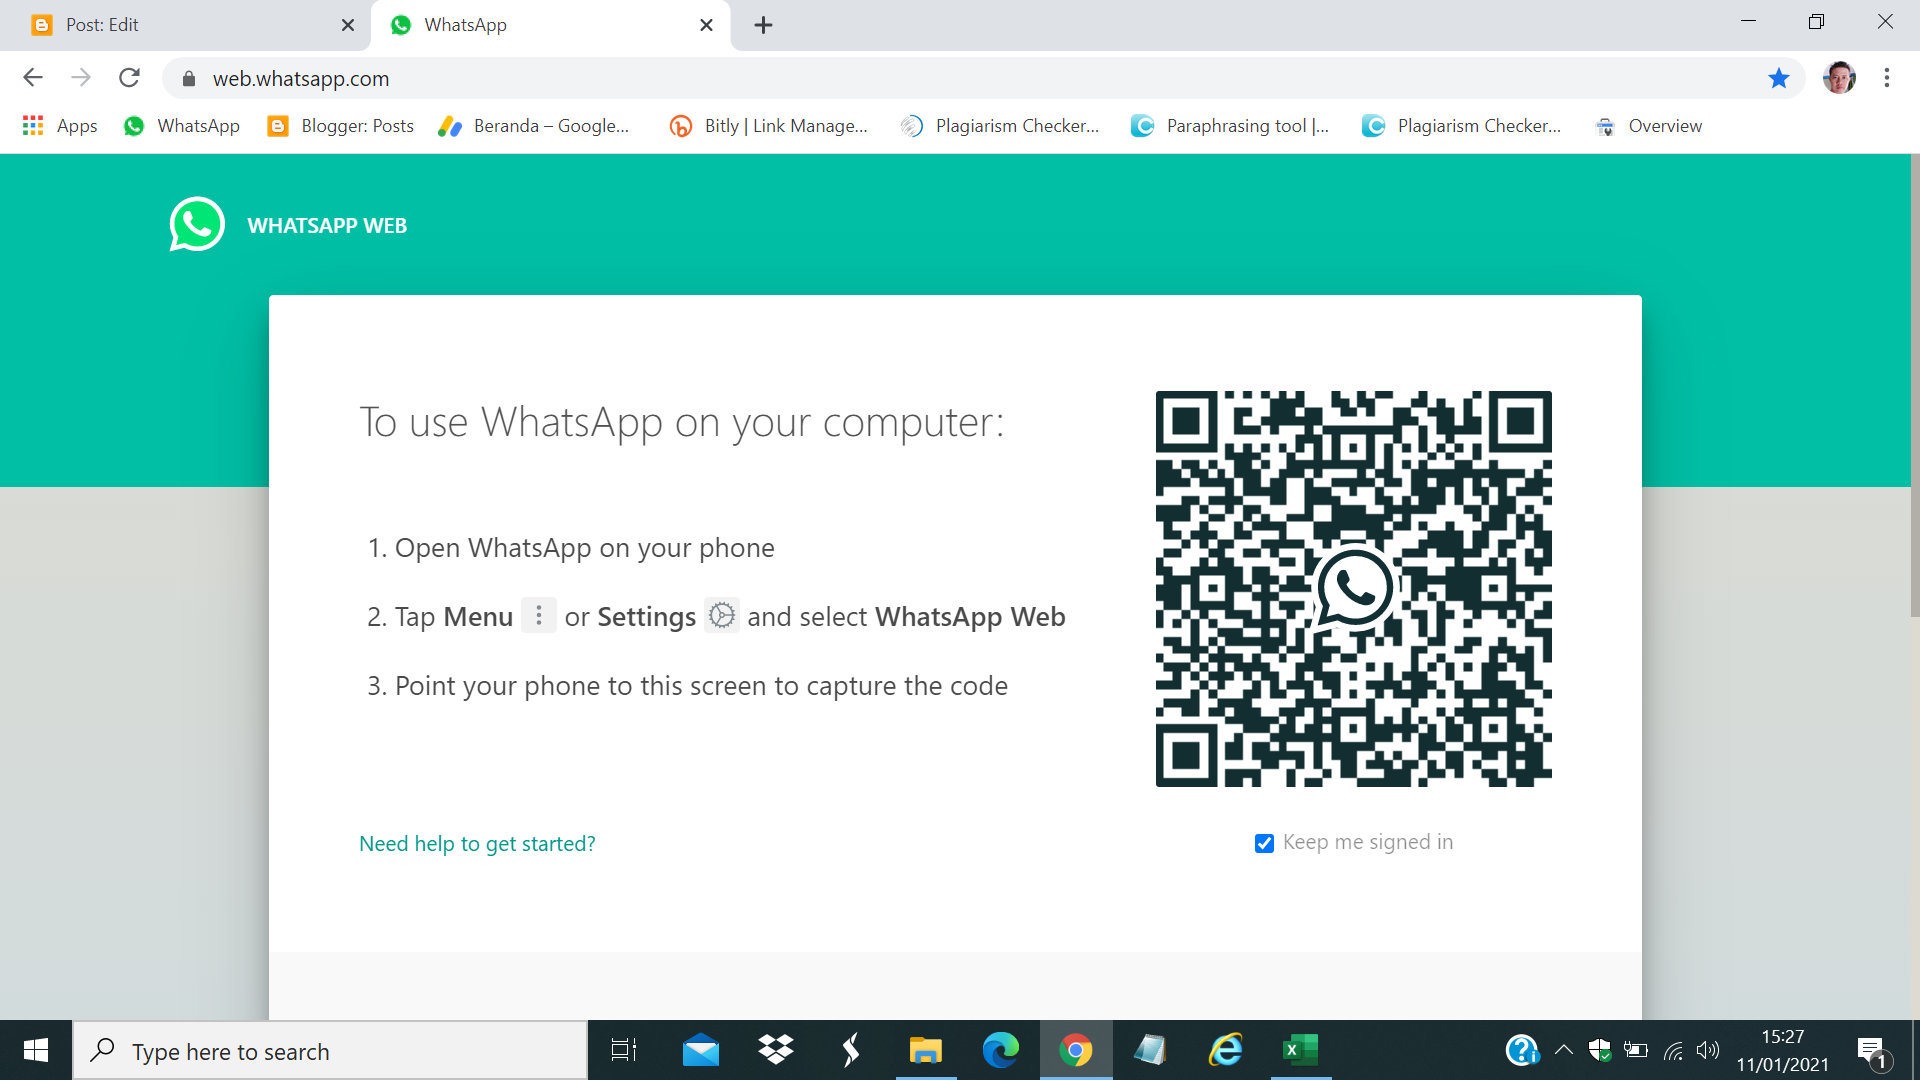 Whatsapp web telegram